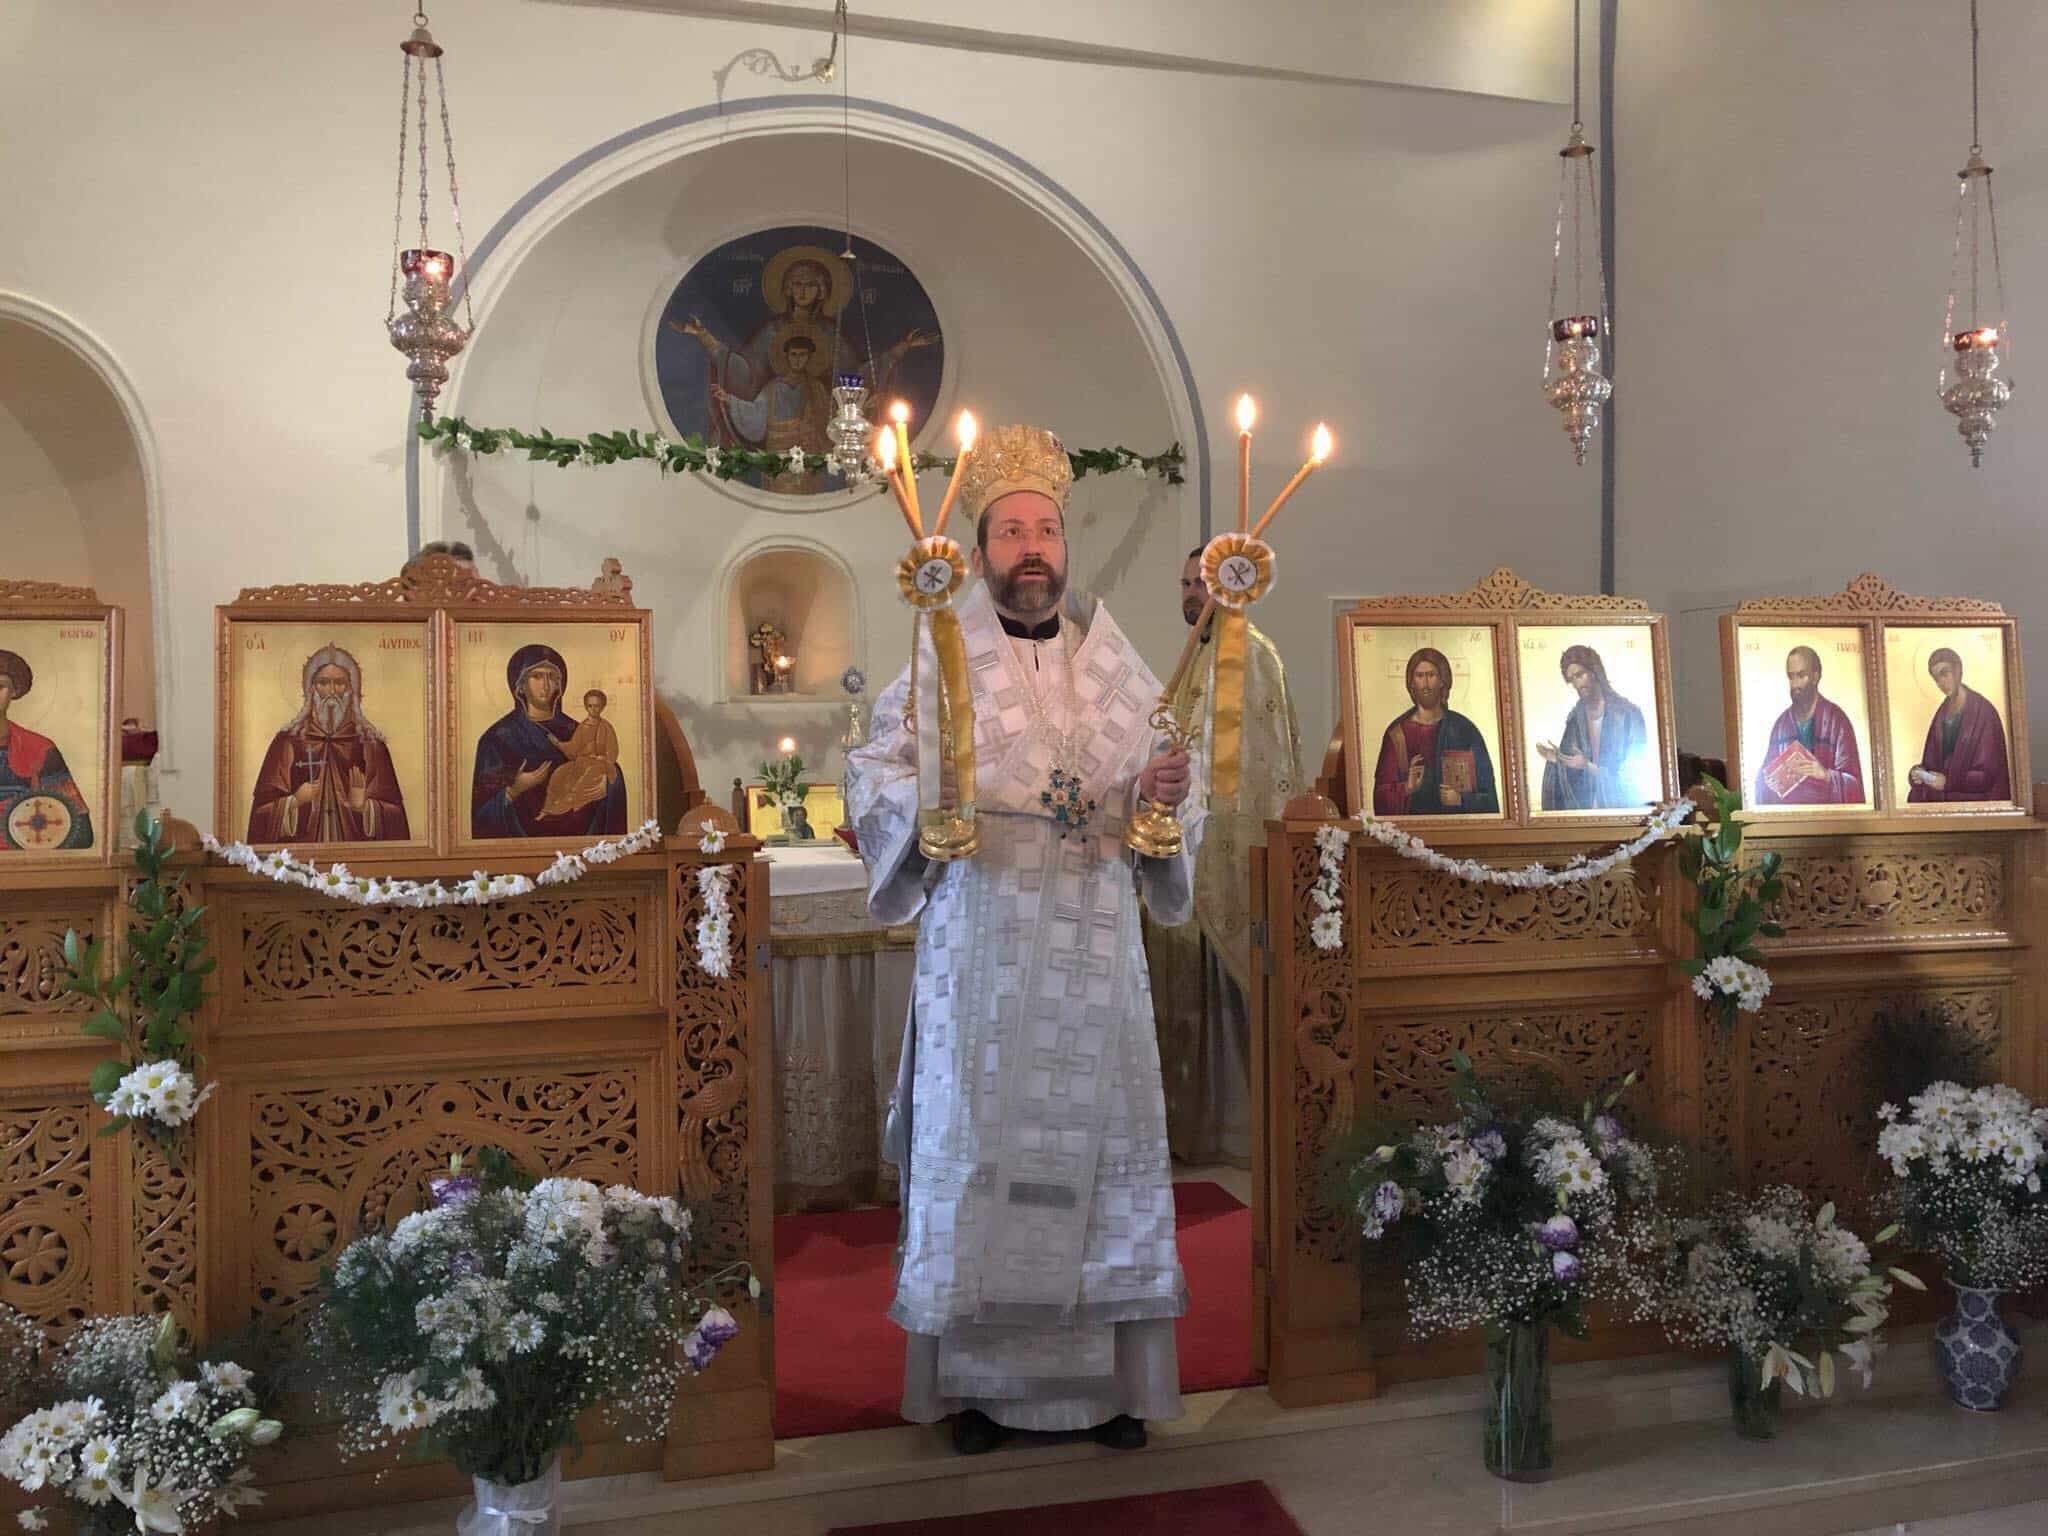 L’Archevêque Job de Telmessos vient d’être élu par le Saint-Synode du Patriarcat œcuménique nouveau métropolite de Pisidie